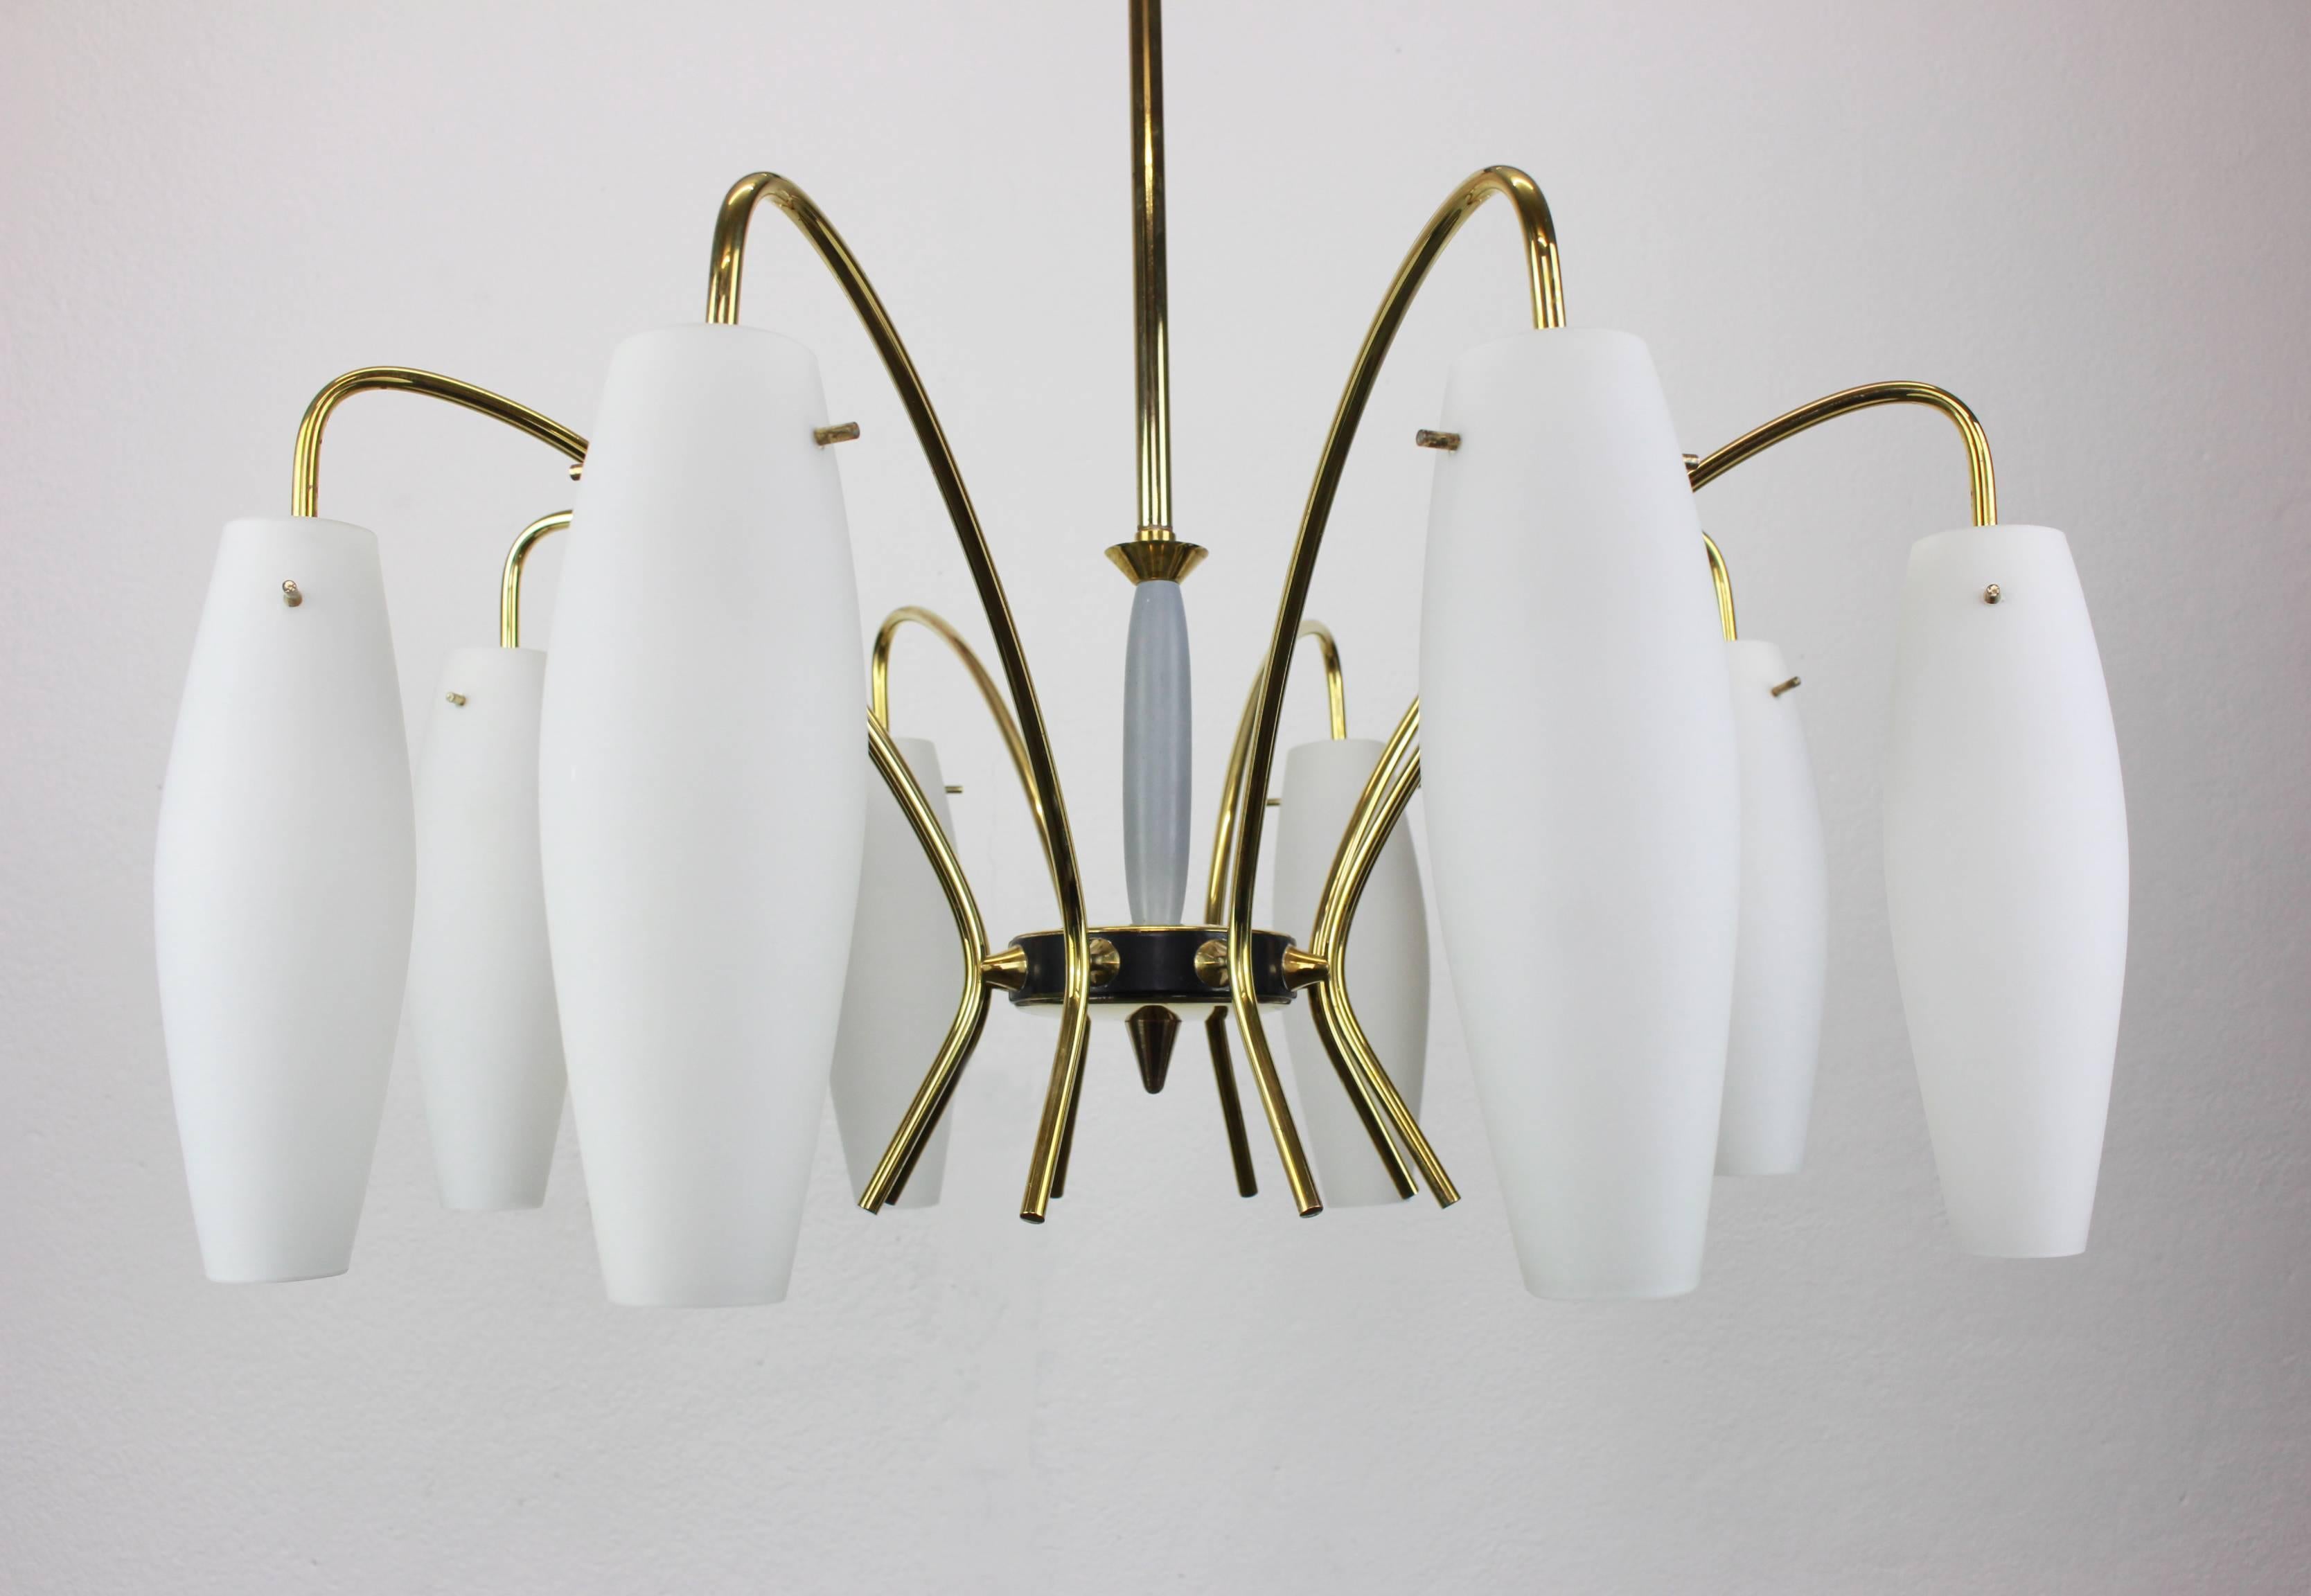 Un lustre étonnant à huit lumières à la manière de Stilnovo, Italie, fabriqué vers 1950-59. Une pièce faite à la main et de grande qualité.

De haute qualité et en très bon état. Nettoyé, bien câblé et prêt à être utilisé. 

Le luminaire nécessite 8